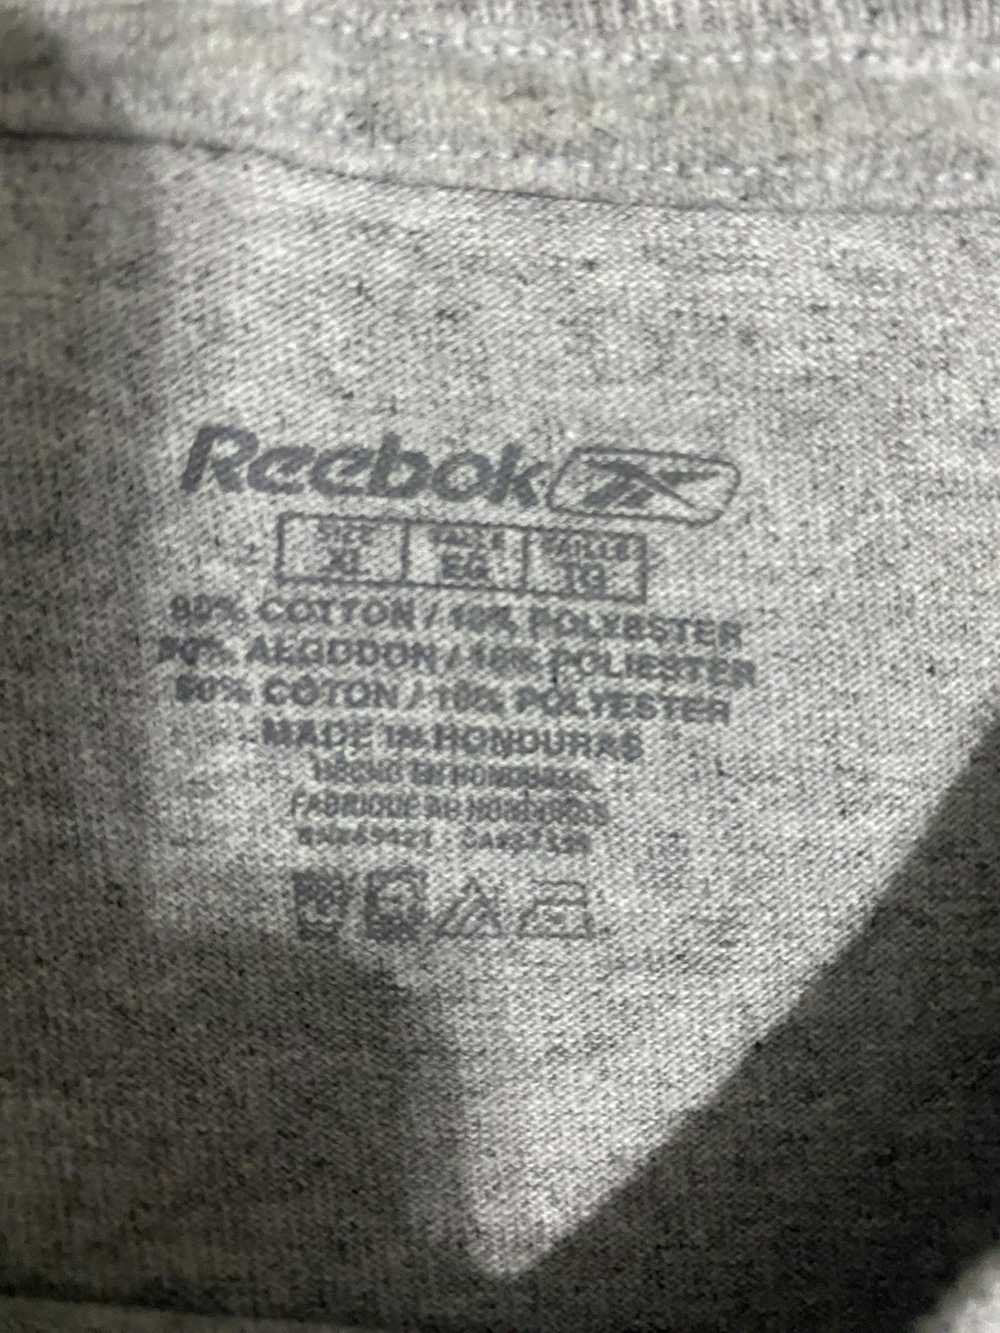 NFL × Reebok chad johnson (ocho cinco) t shirt - image 3